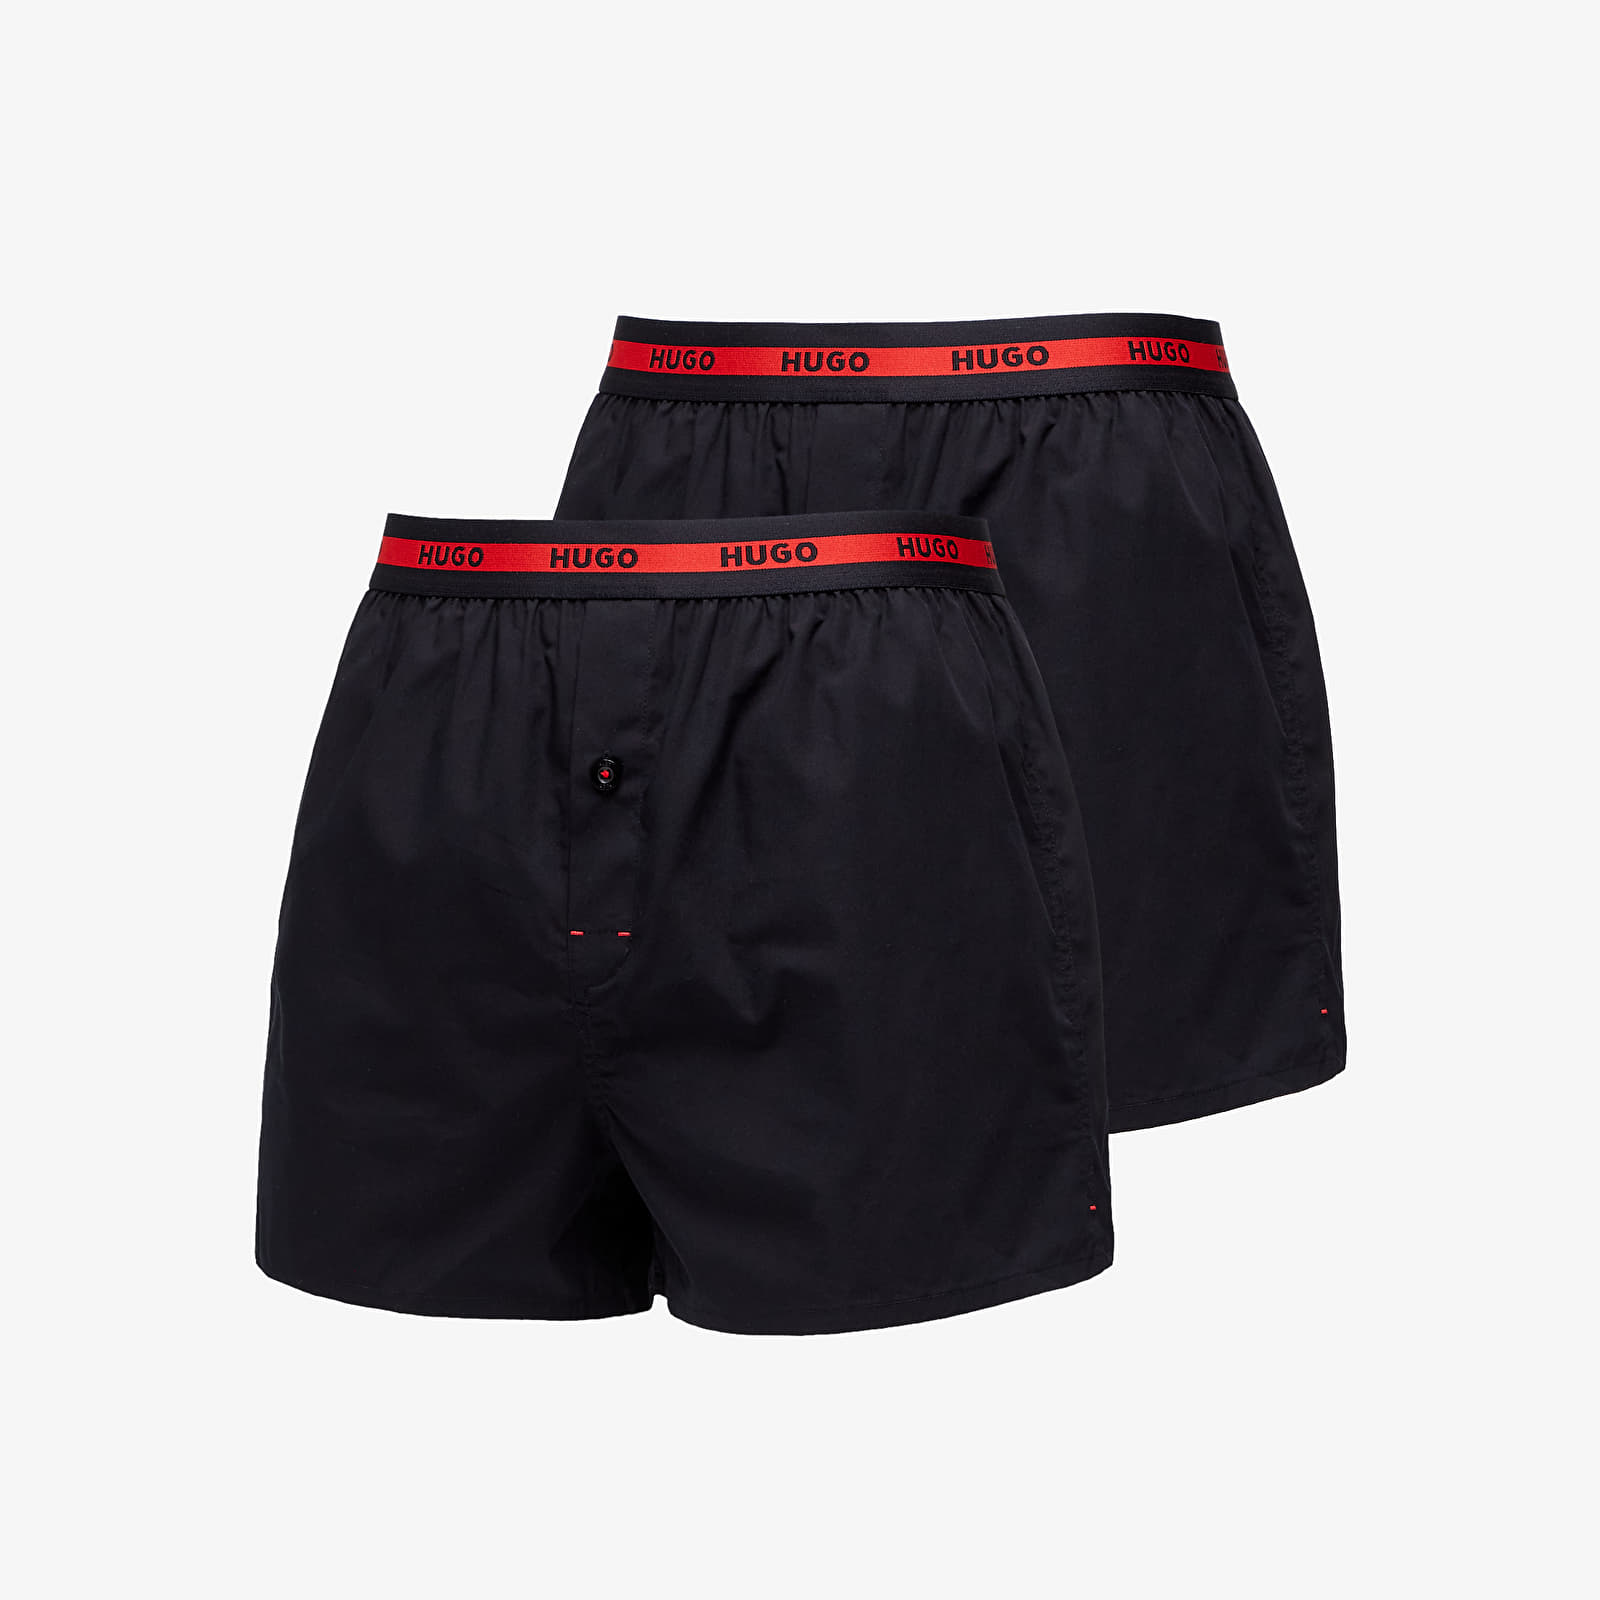 Trunks Hugo Boss Woven Boxer Shorts 2 Pack Black